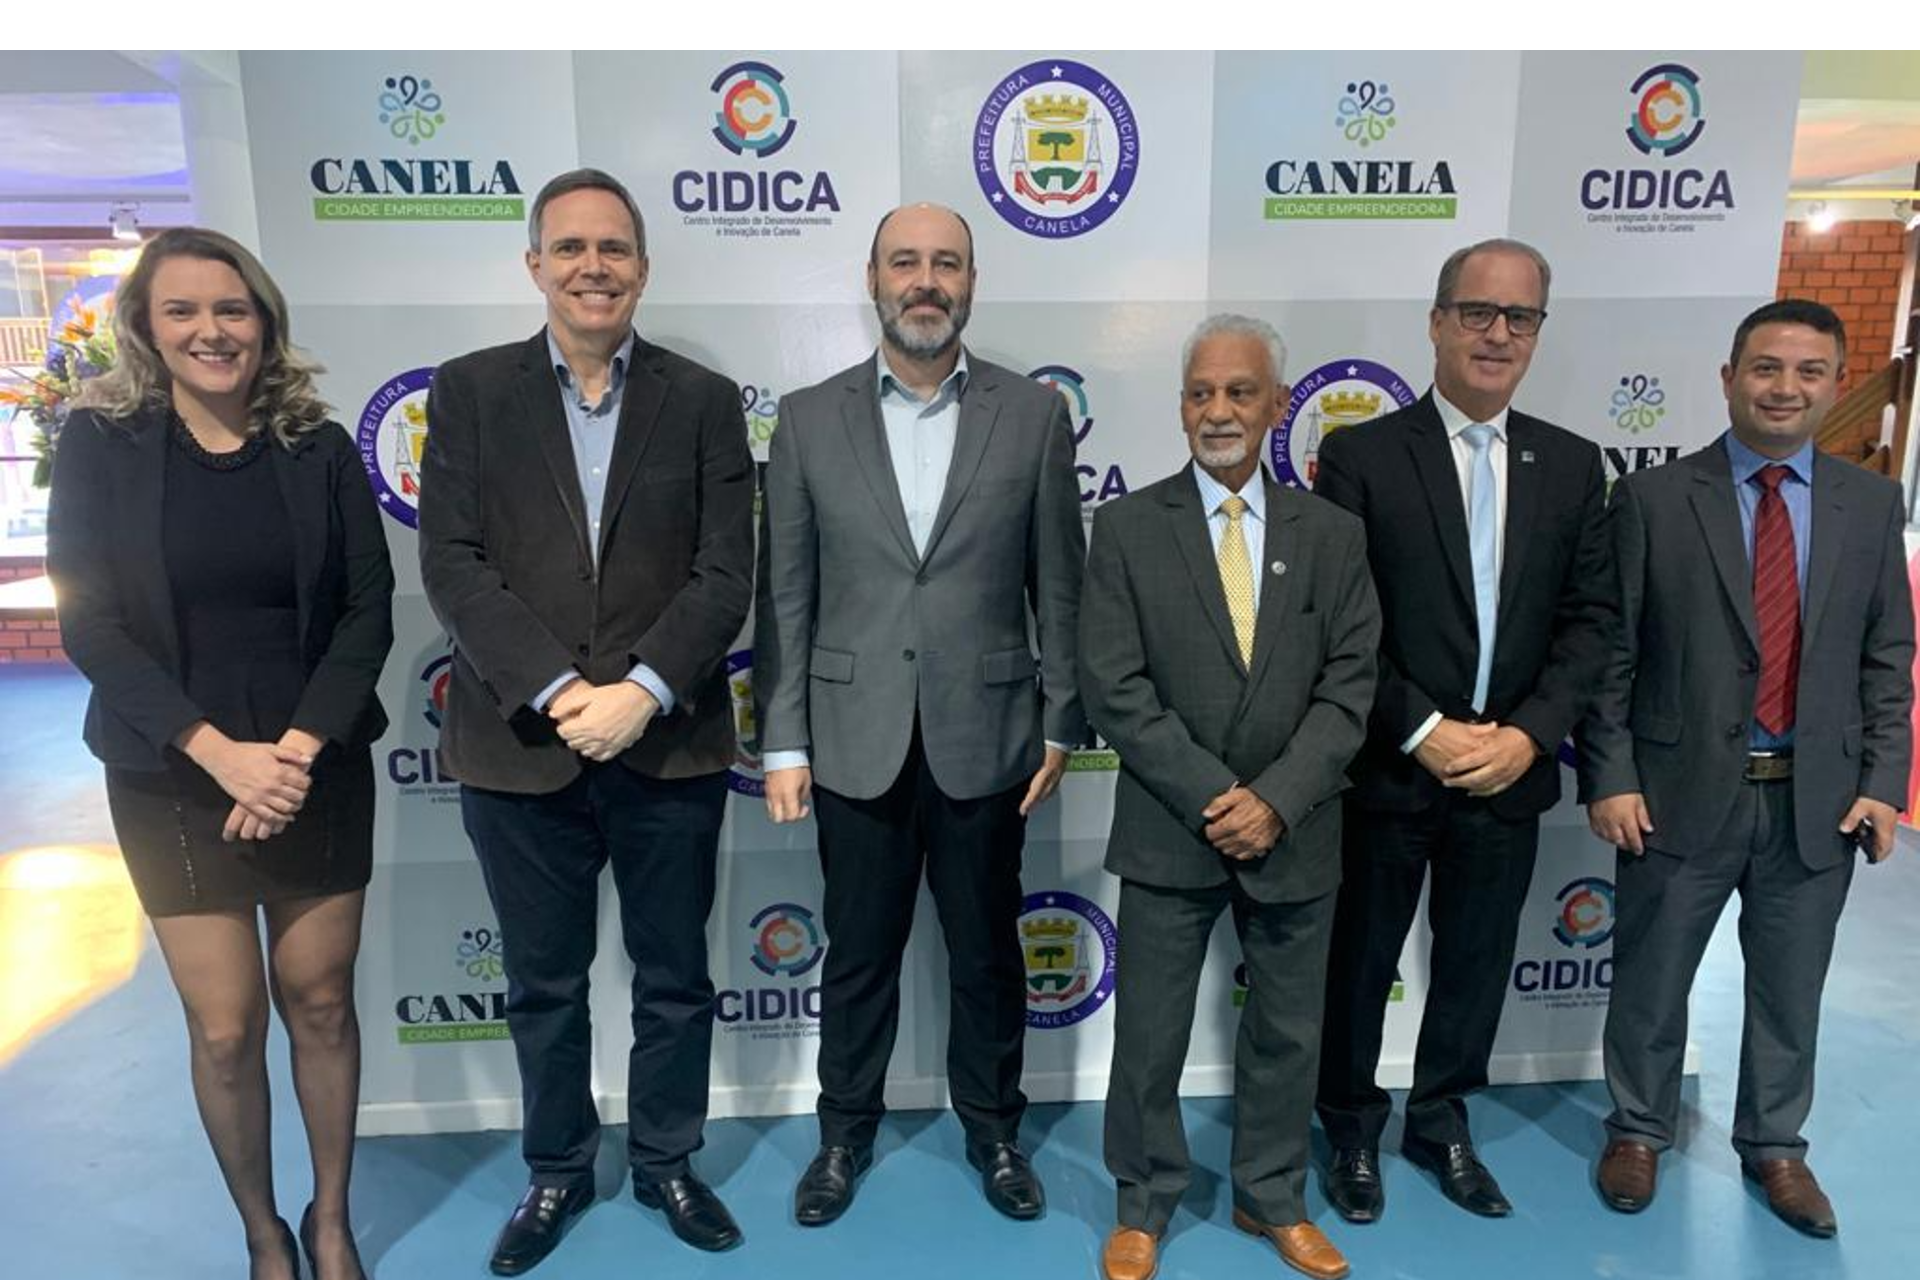 Diretor da Unitec e vice-reitor da Unisinos participam de inauguração do Cidica, em Canela